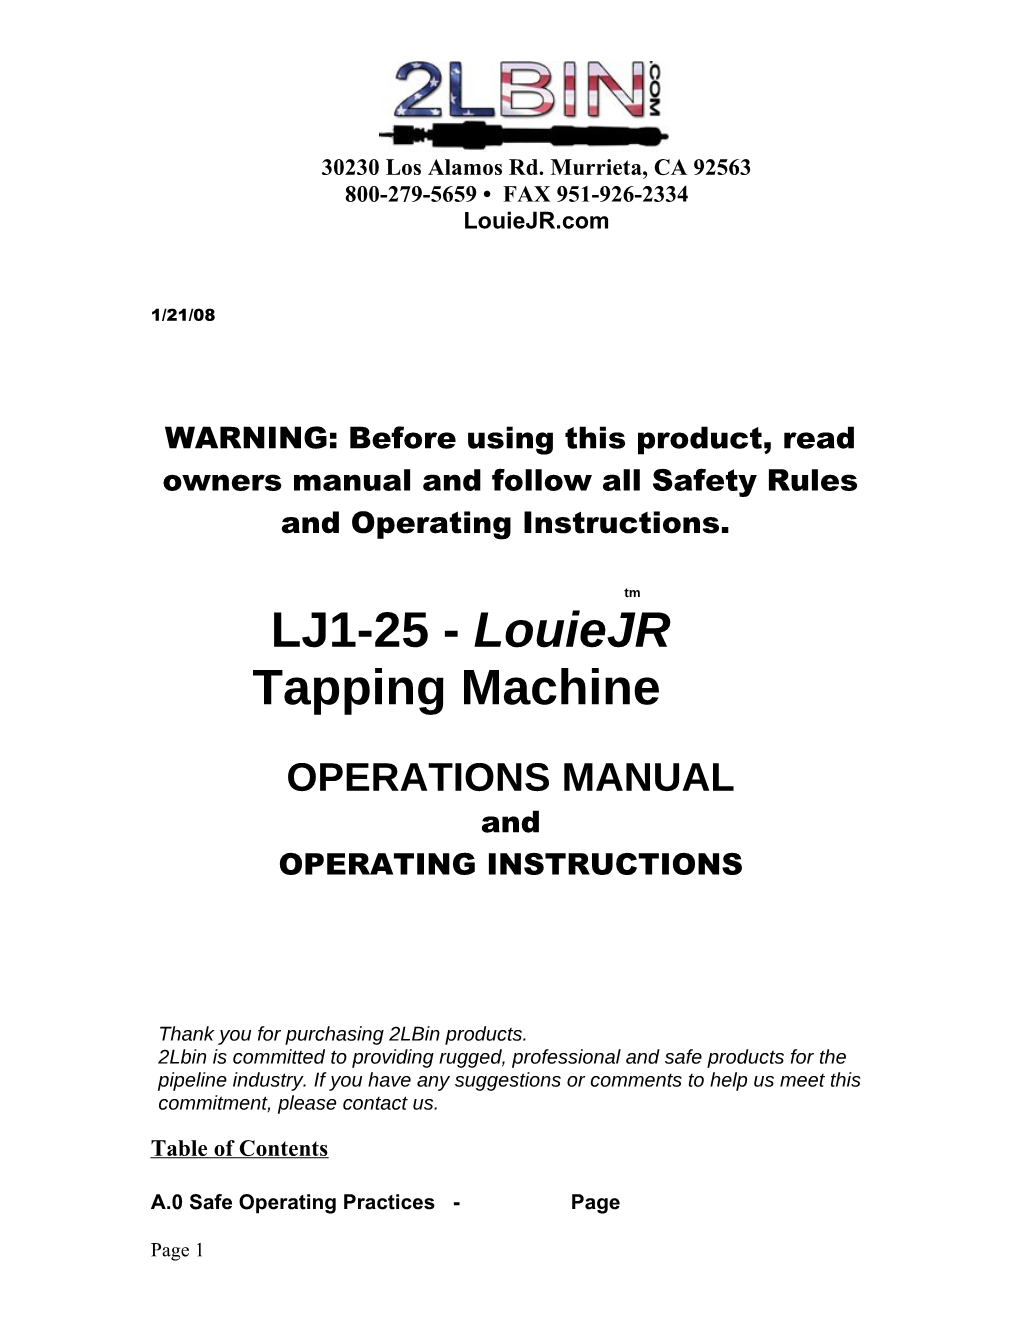 LJ1-25 - Louiejr Tapping Machine